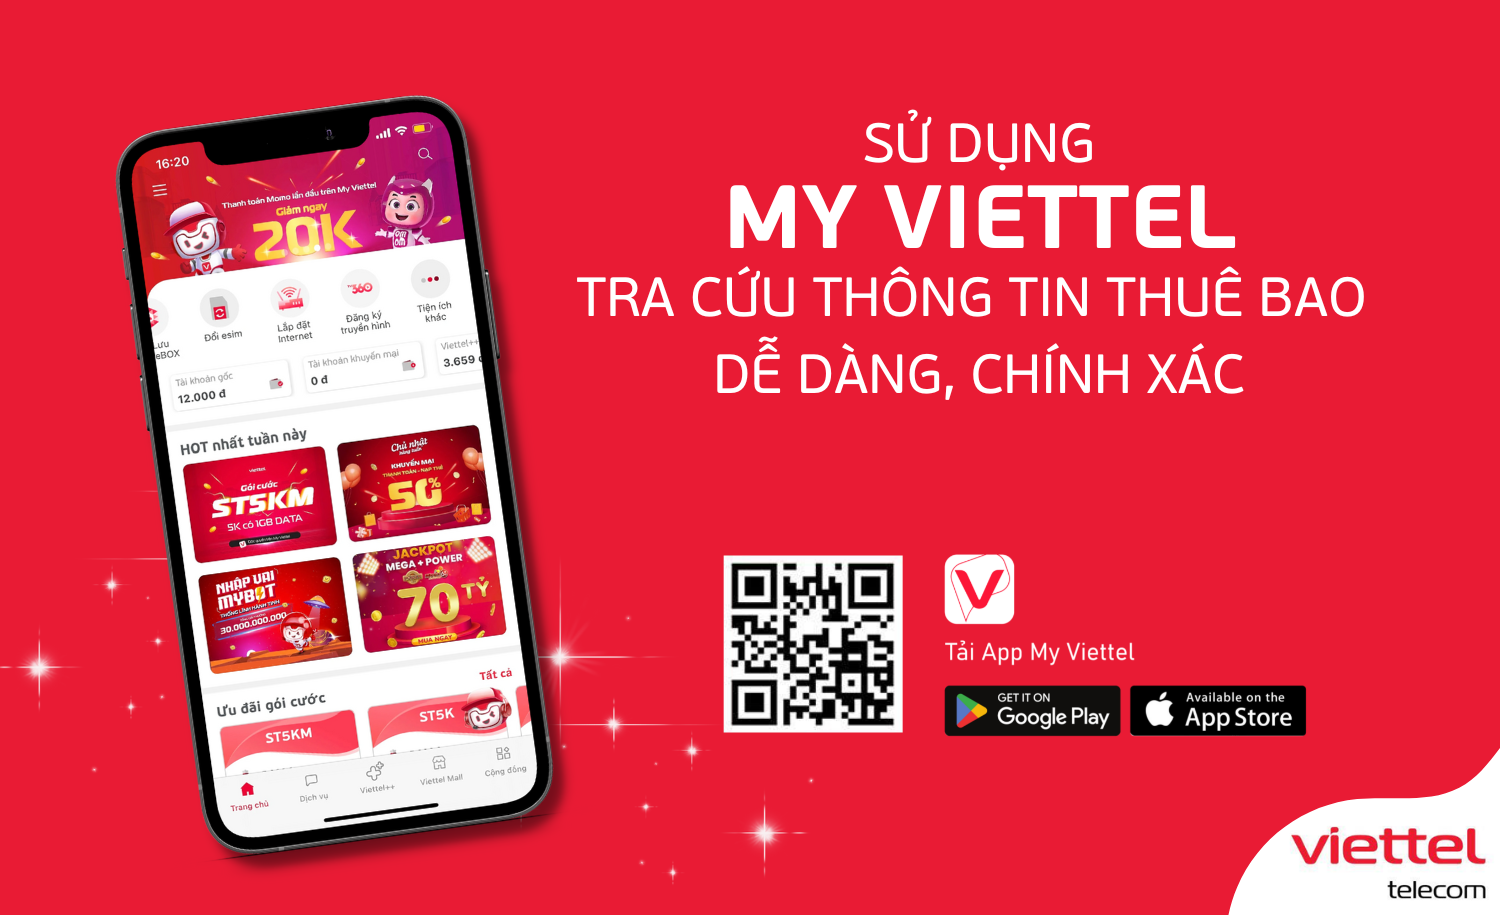 Viettel Telecom là một trong những nhà cung cấp dịch vụ viễn thông hàng đầu tại Việt Nam. Khách hàng của Viettel Telecom sẽ được trải nghiệm các gói cước và chất lượng dịch vụ tuyệt vời, cùng với sự hỗ trợ nhiệt tình của nhân viên công ty. Hãy click vào hình ảnh liên quan để khám phá thêm nhiều điều thú vị từ Viettel Telecom!